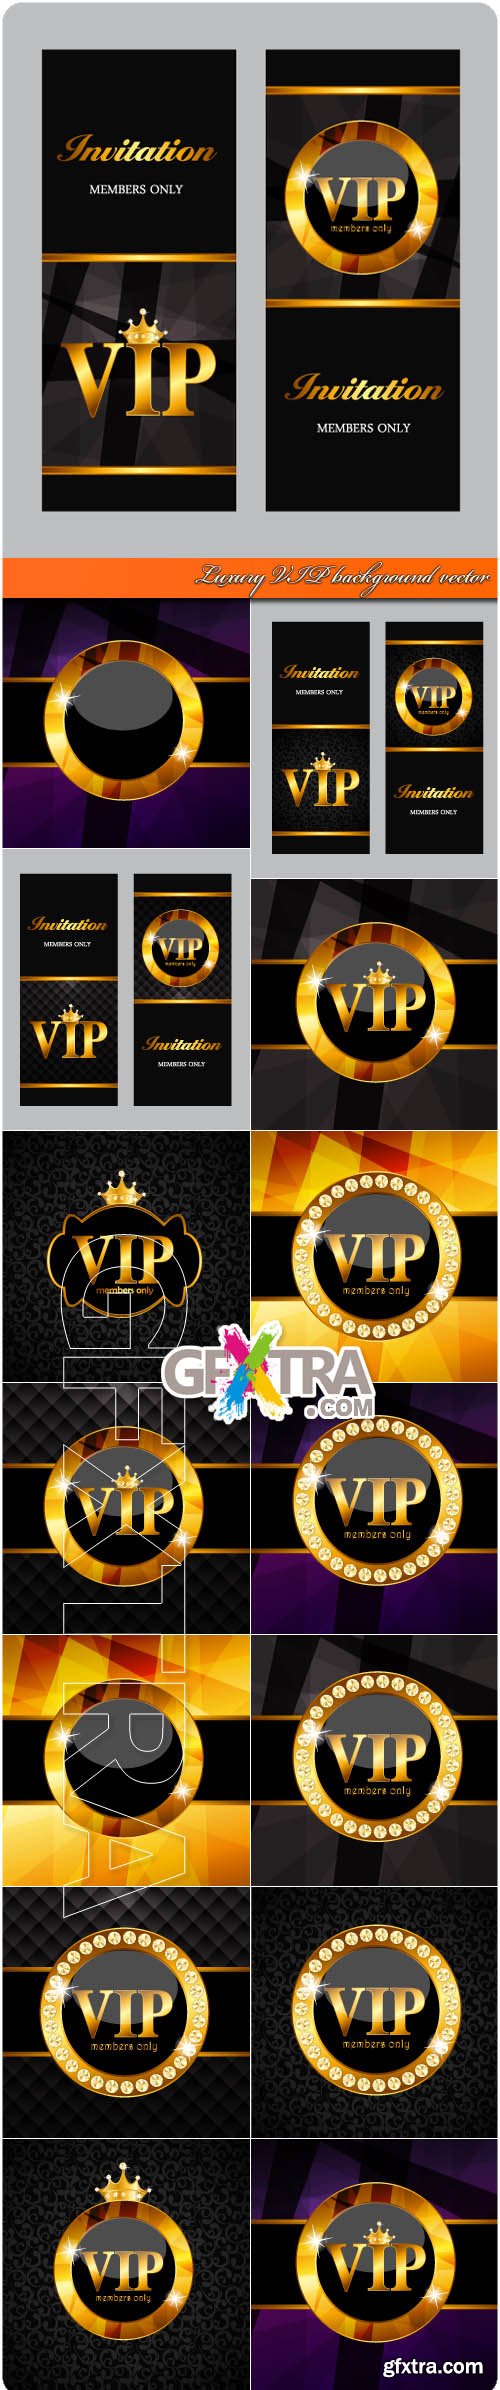 Luxury VIP background vector